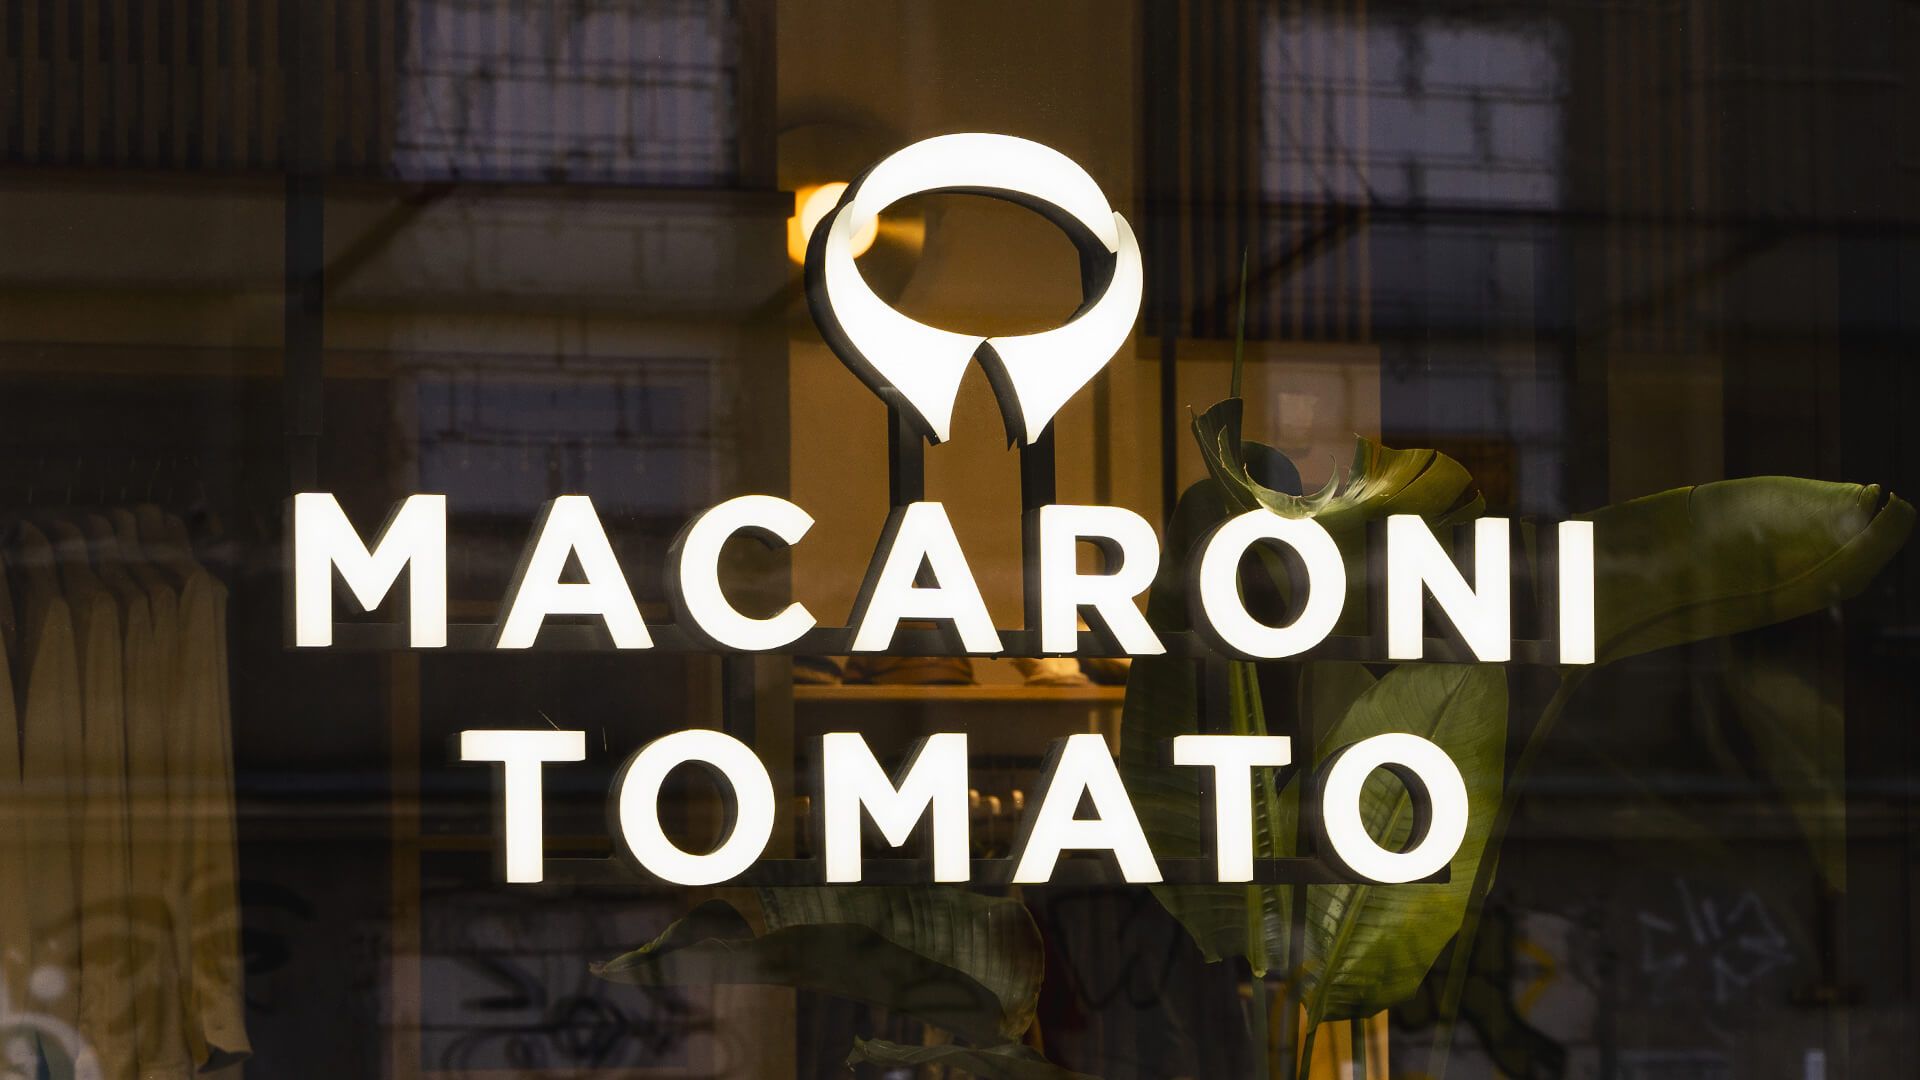 Macaroni Tomato - Litery świecące w całości bokiem i przodem, w kolorze białym, LED.